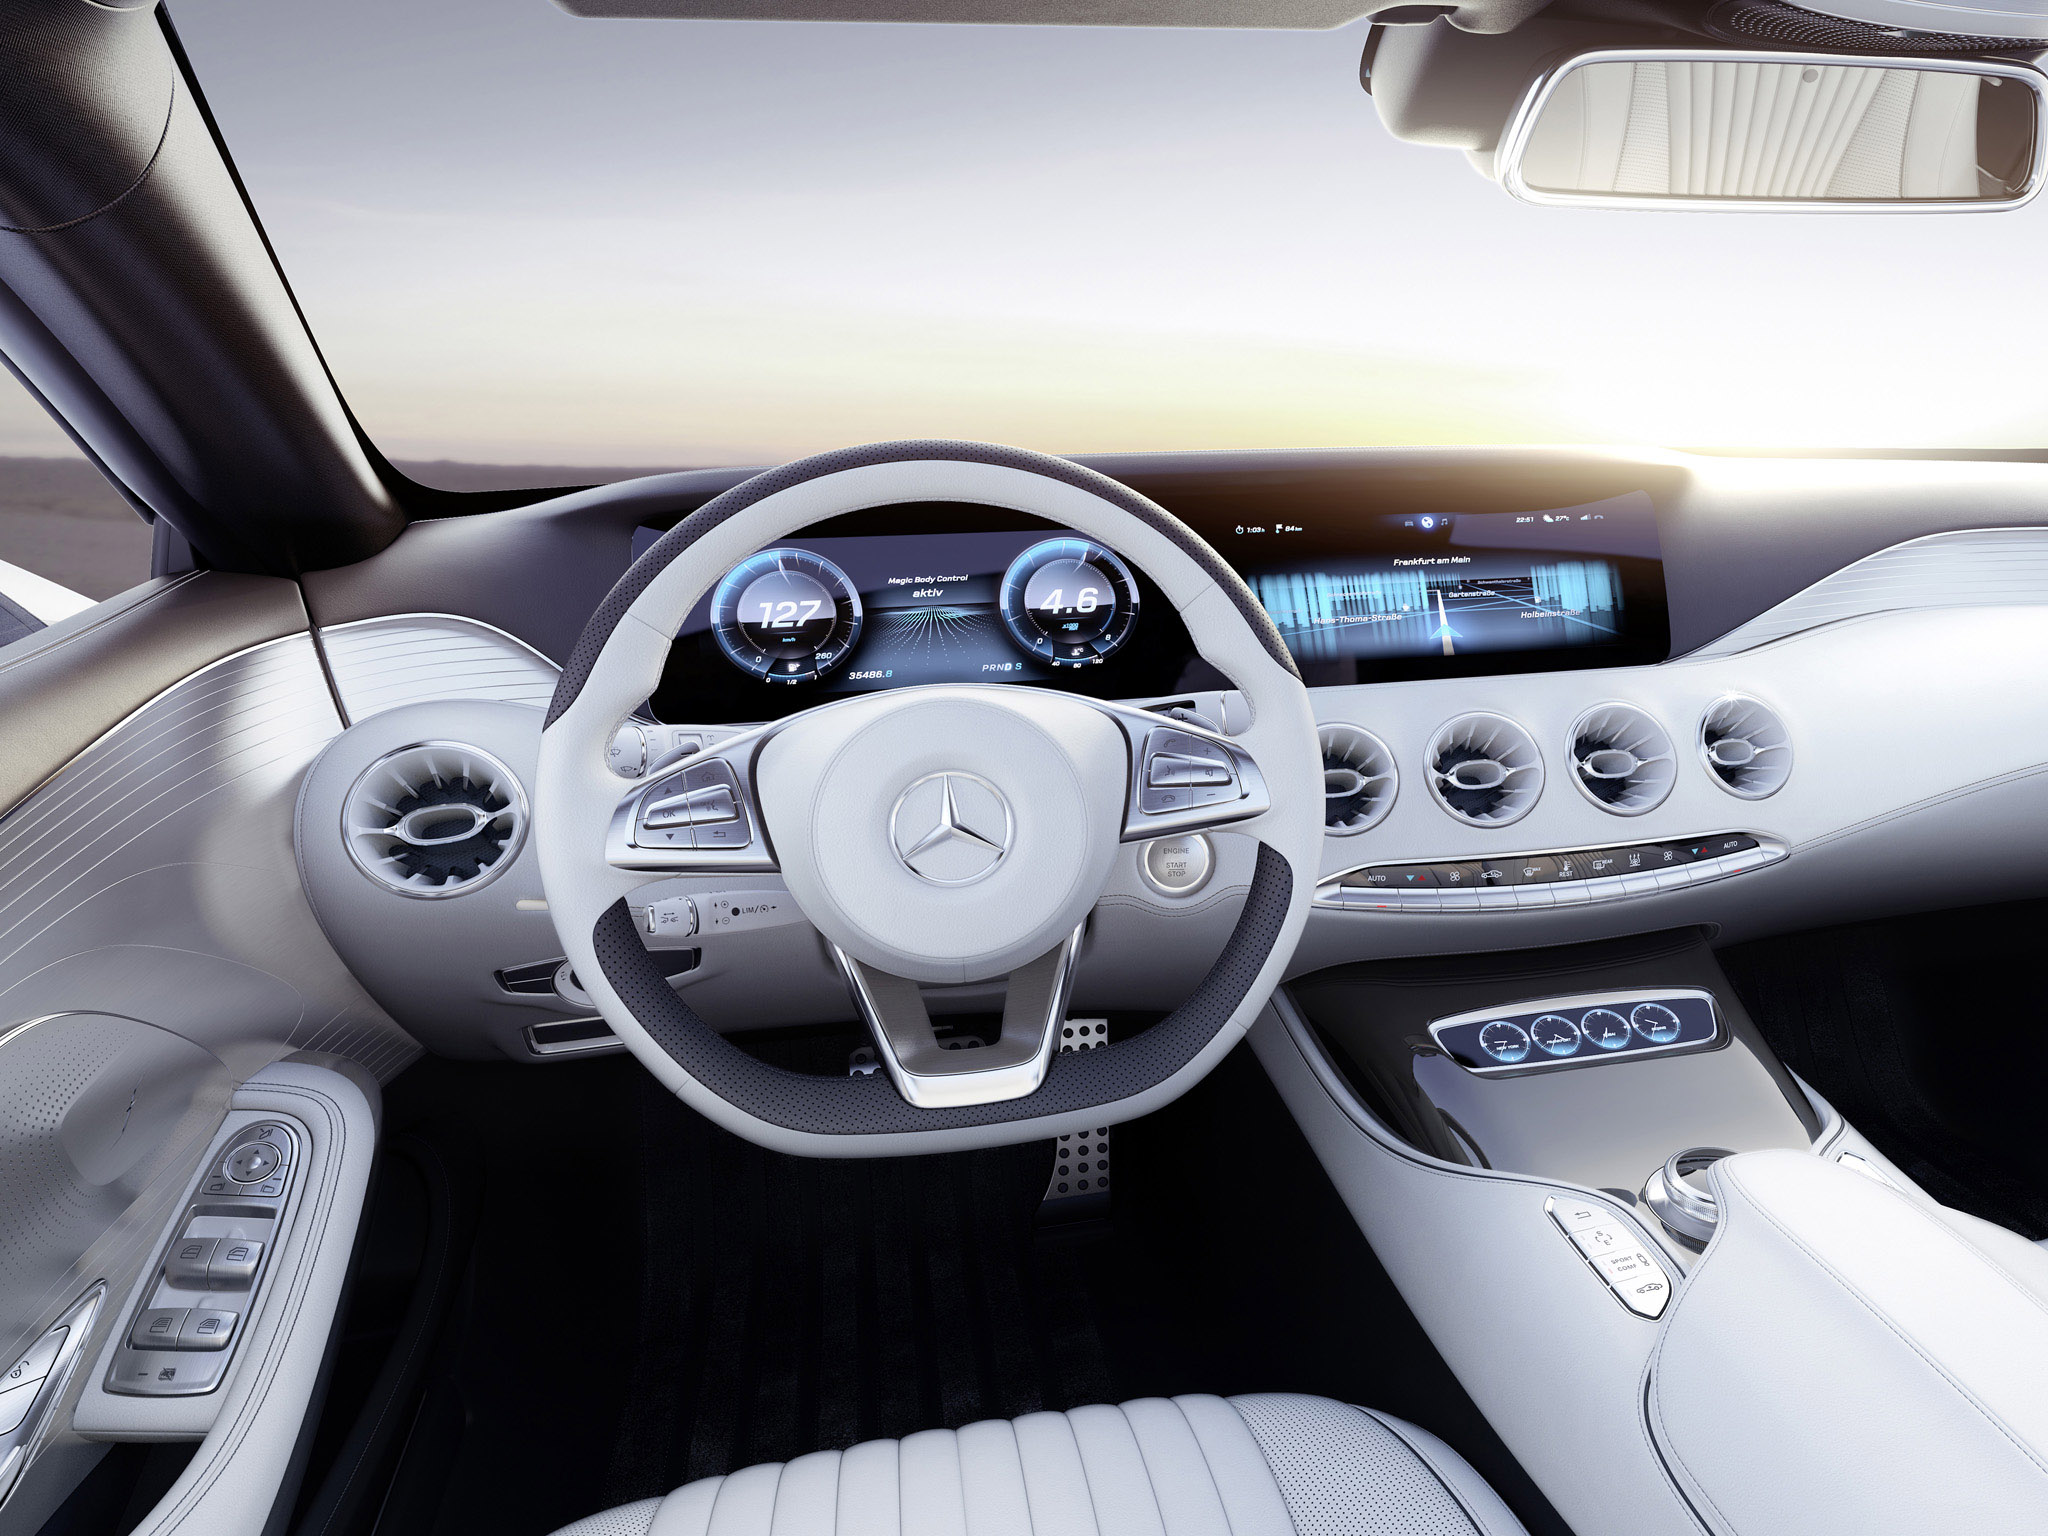 2013, Mercedes, Benz, S class, Coupe, Concept, Interior Wallpaper